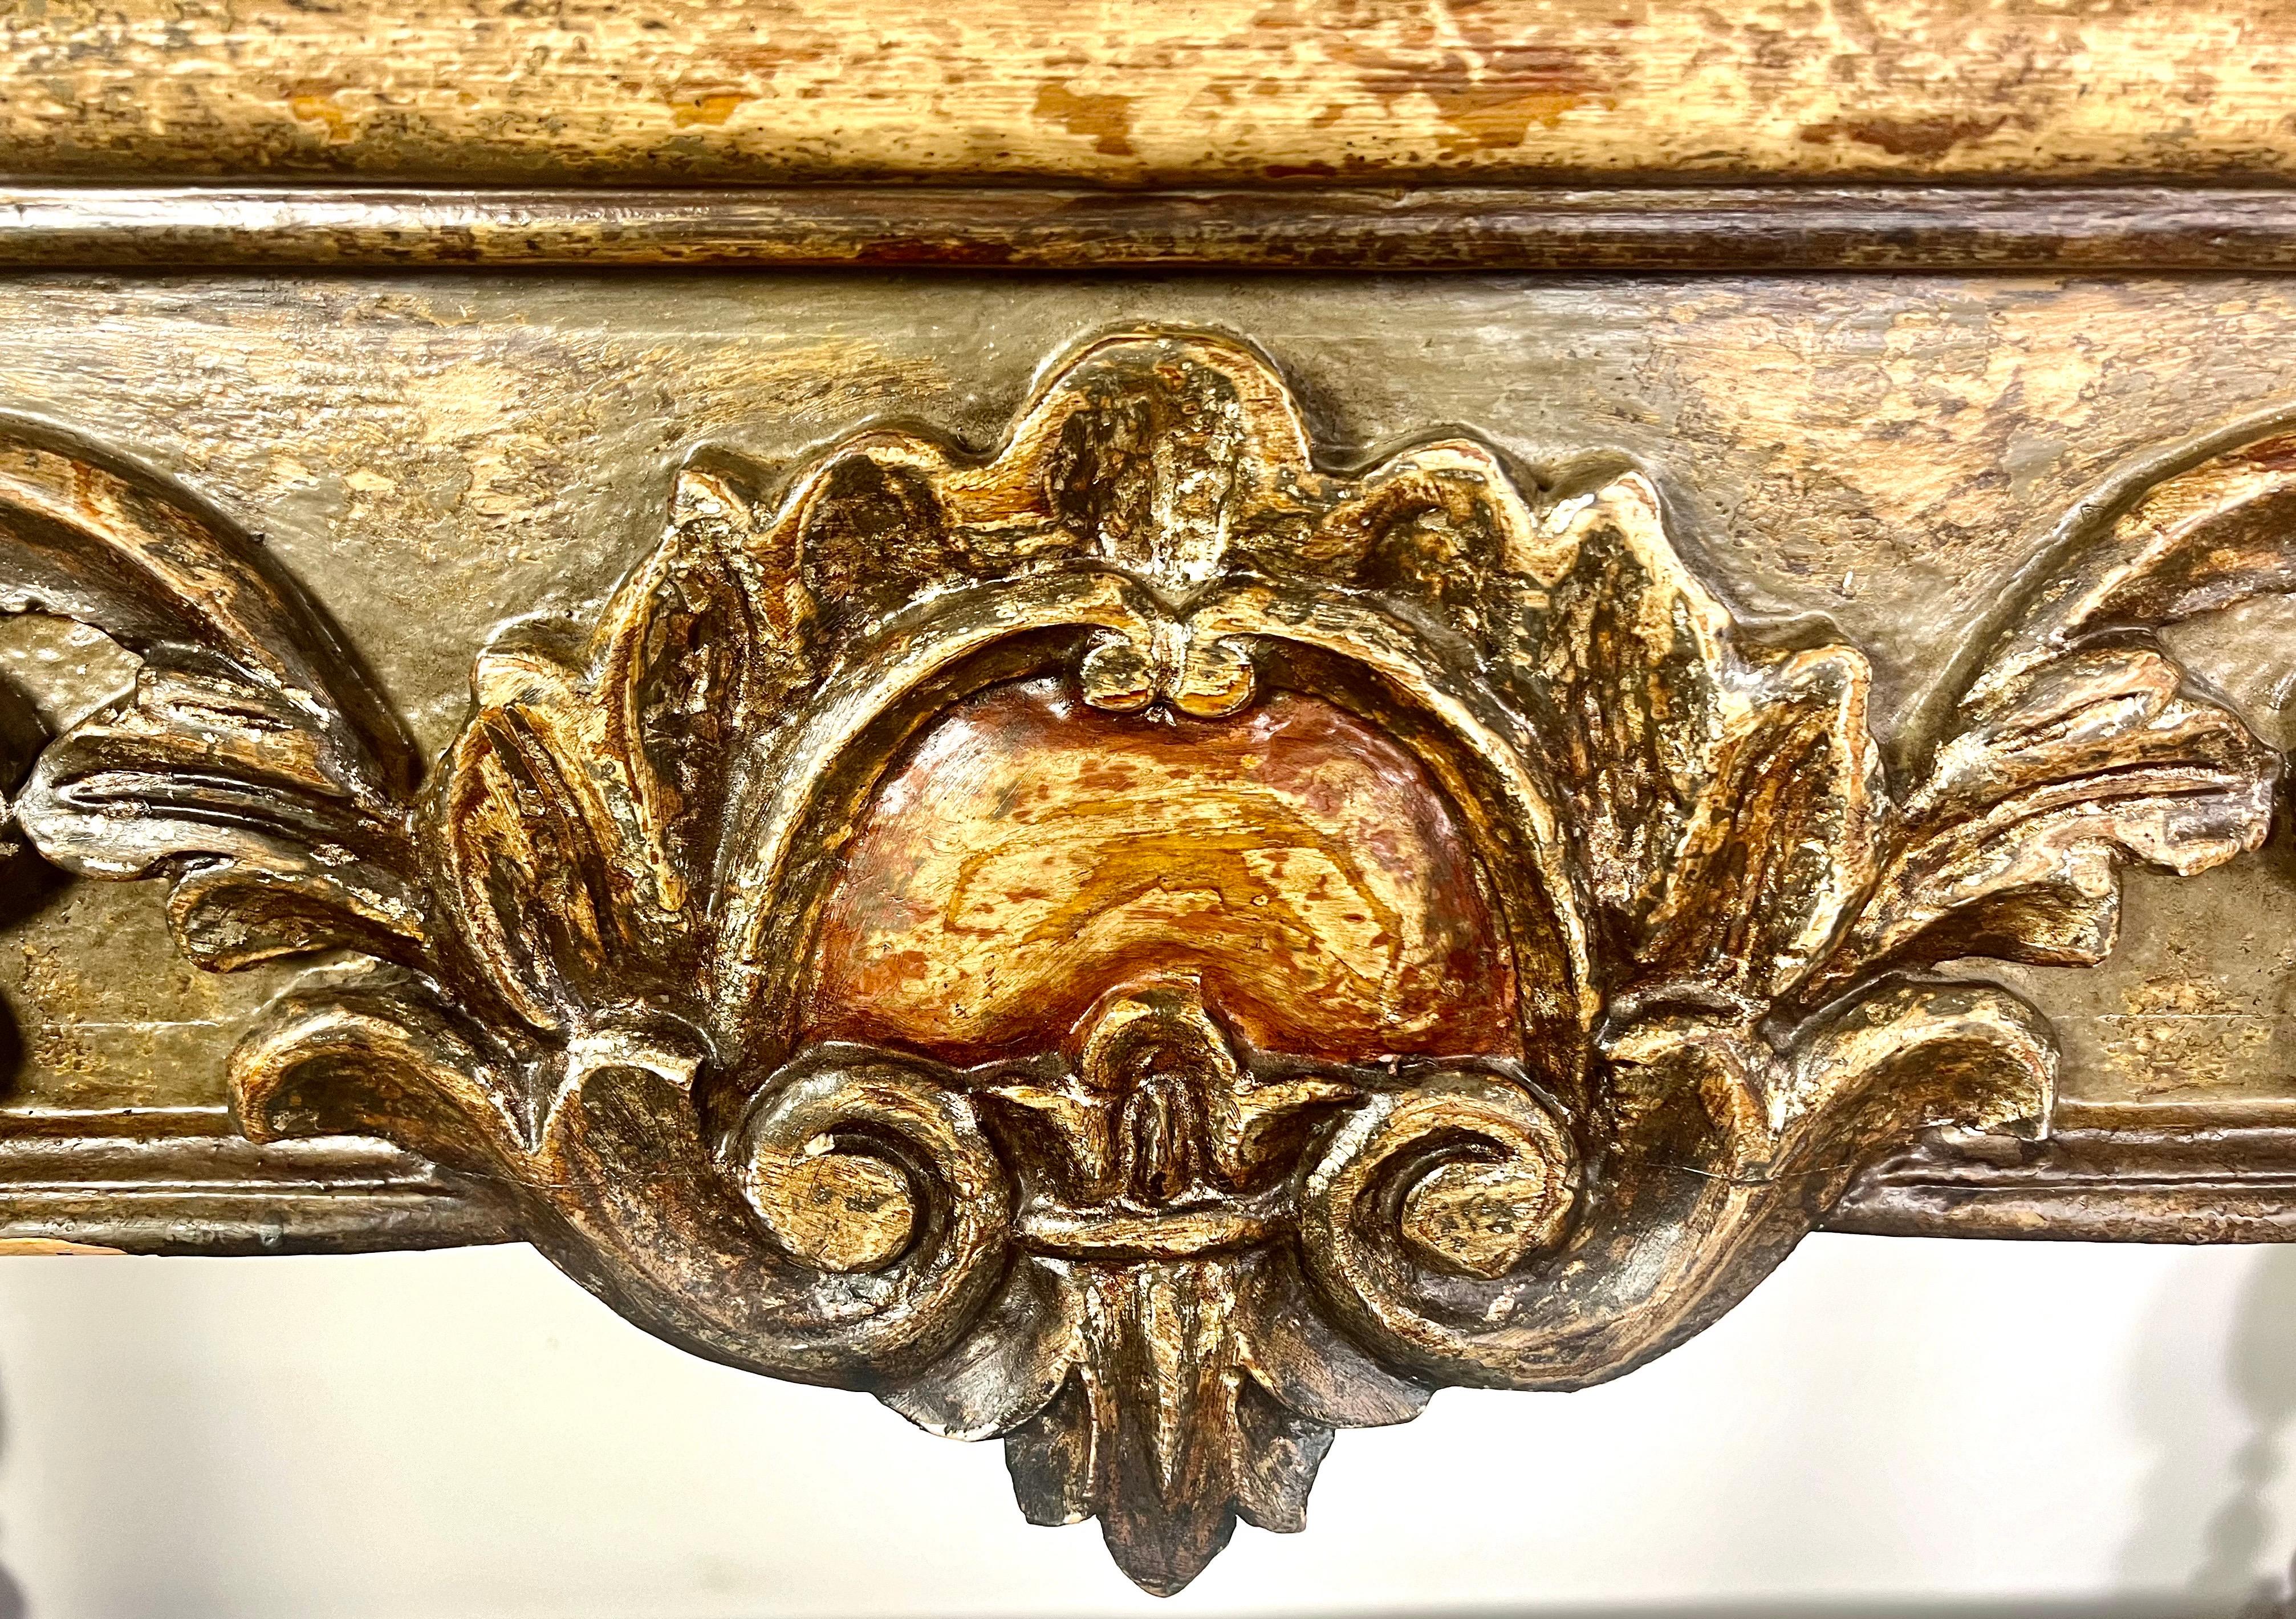 Eine Konsole im spanischen Kolonialstil, die sich durch ihre eleganten und historischen Designelemente auszeichnet.  Am Eingang befindet sich eine prominente Kartusche mit einem geschnitzten Medaillon in der Mitte, das von detaillierten